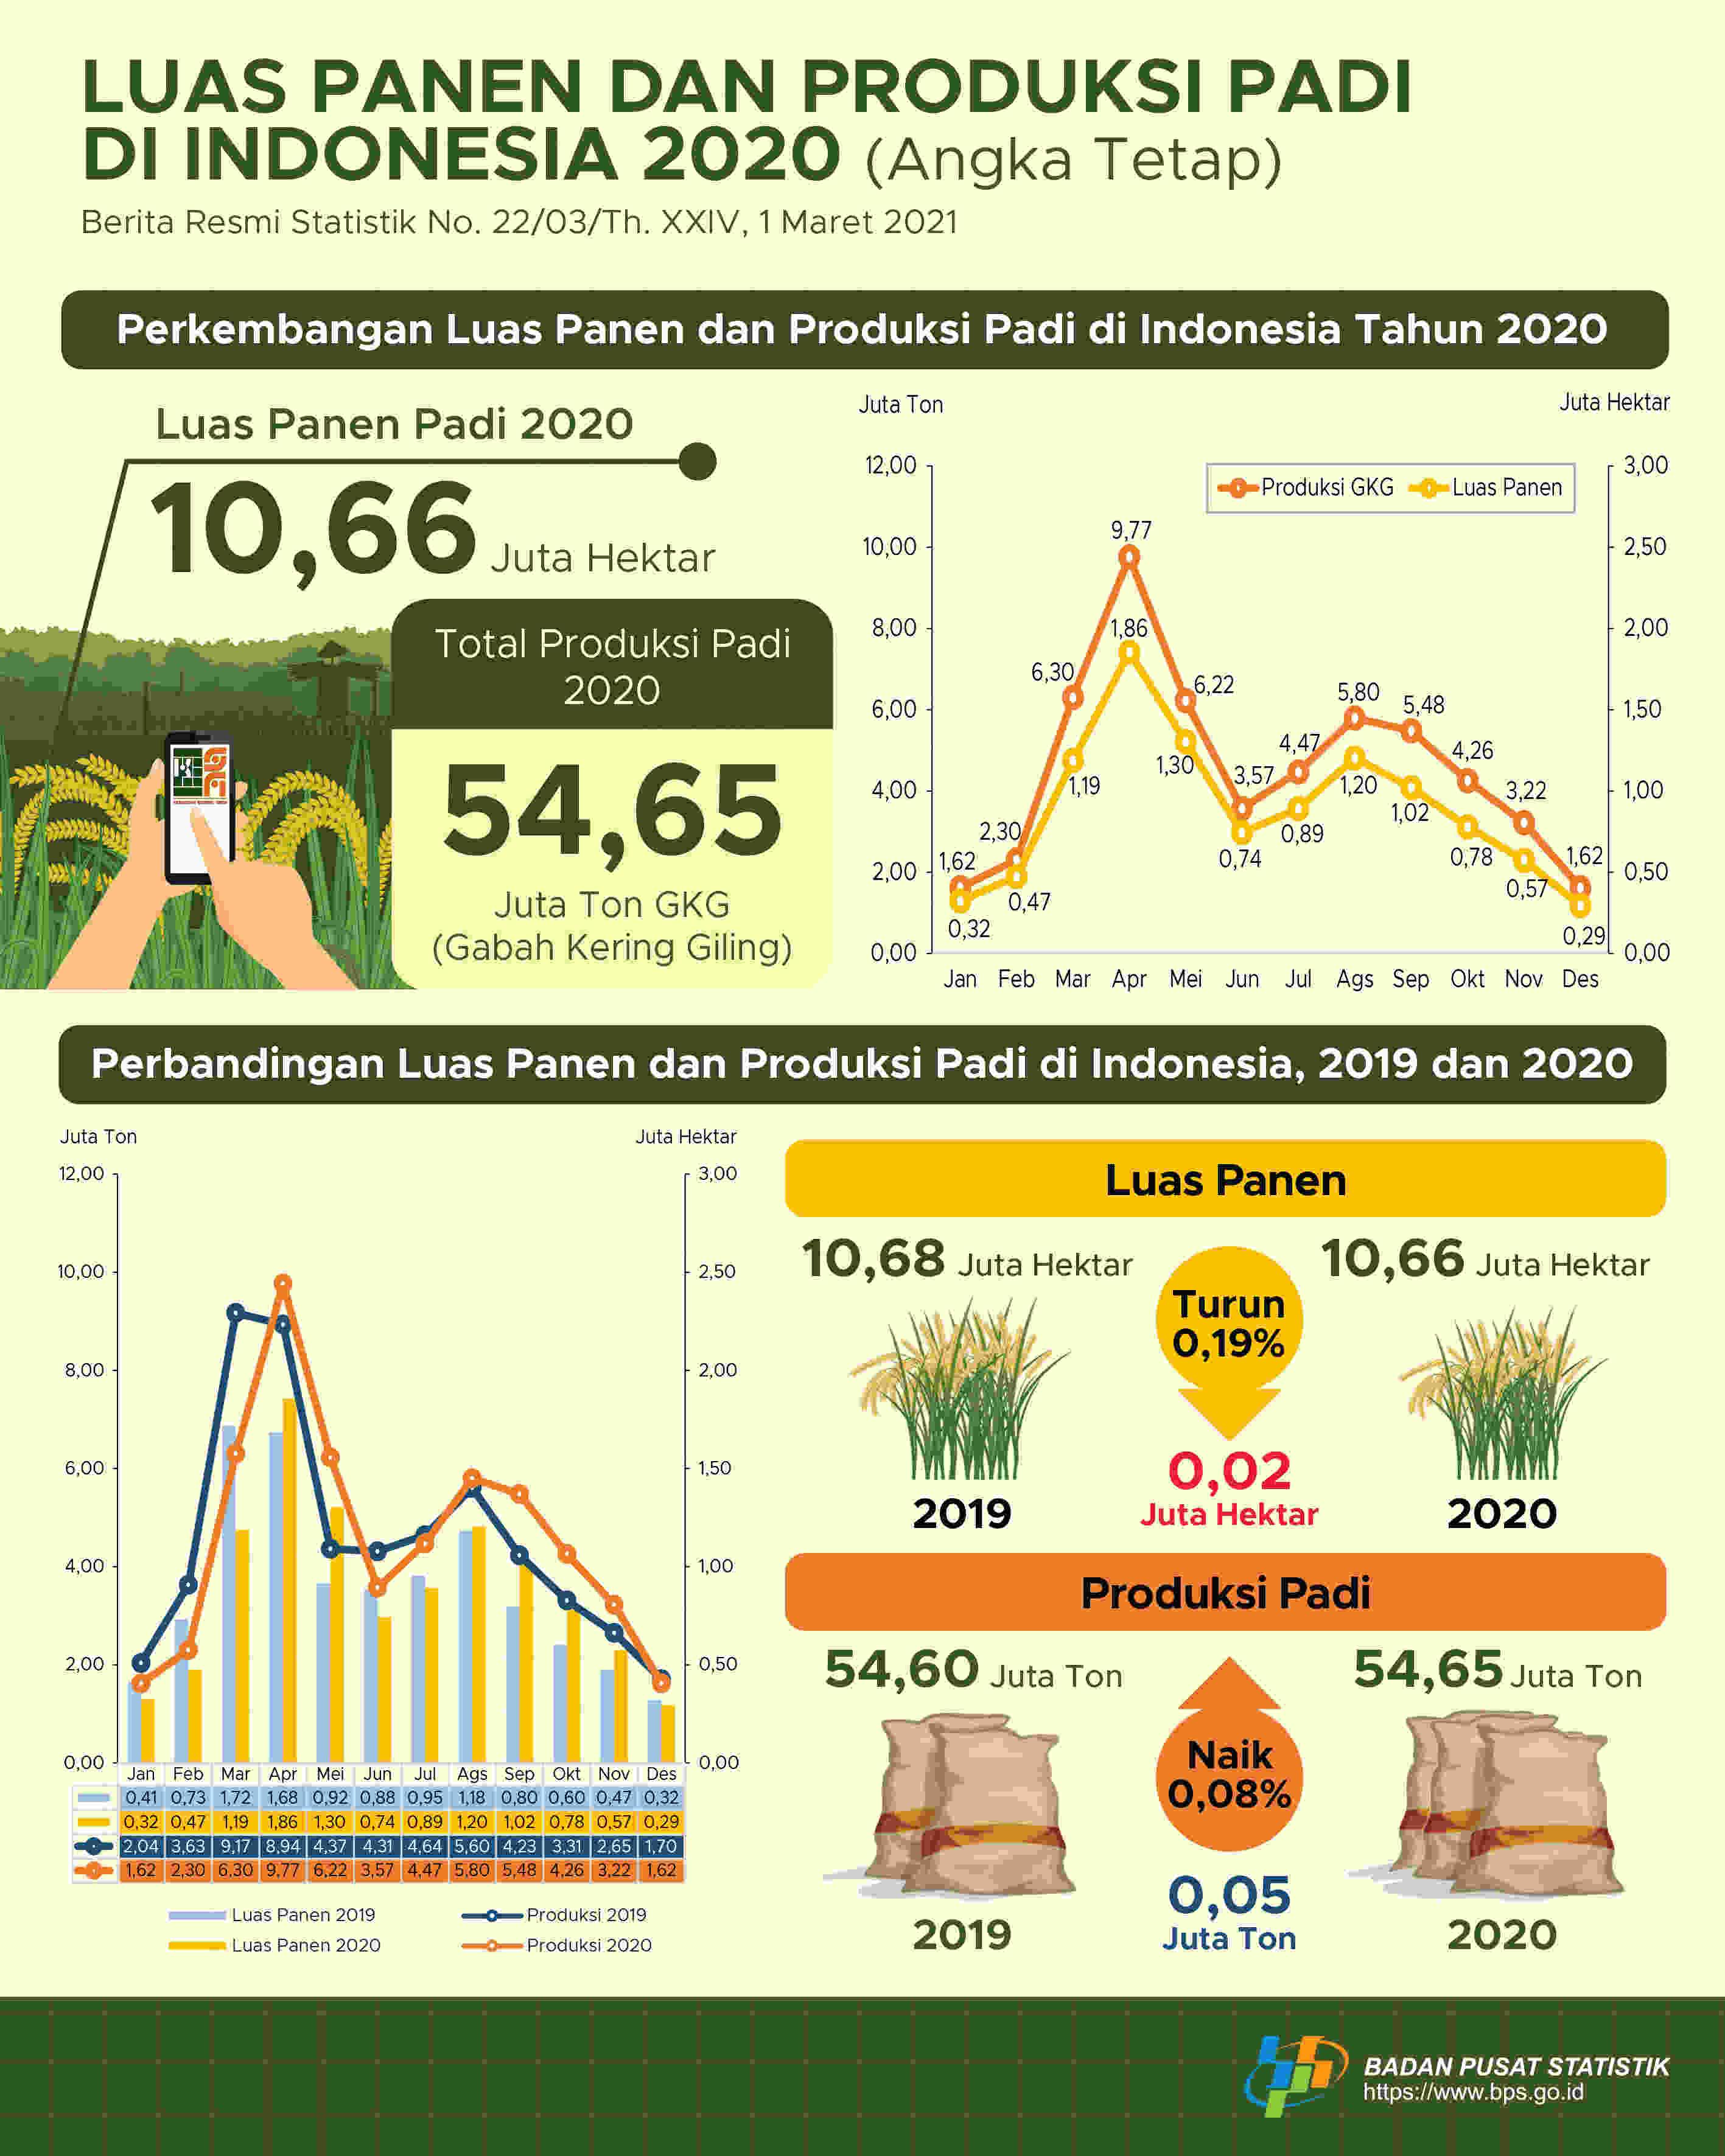 Luas panen padi pada tahun 2020 mengalami penurunan dibandingkan tahun 2019 sebesar 0,19 persen dan produksi padi pada tahun 2020 mengalami kenaikan dibandingkan tahun 2019 sebesar 0,08 persen